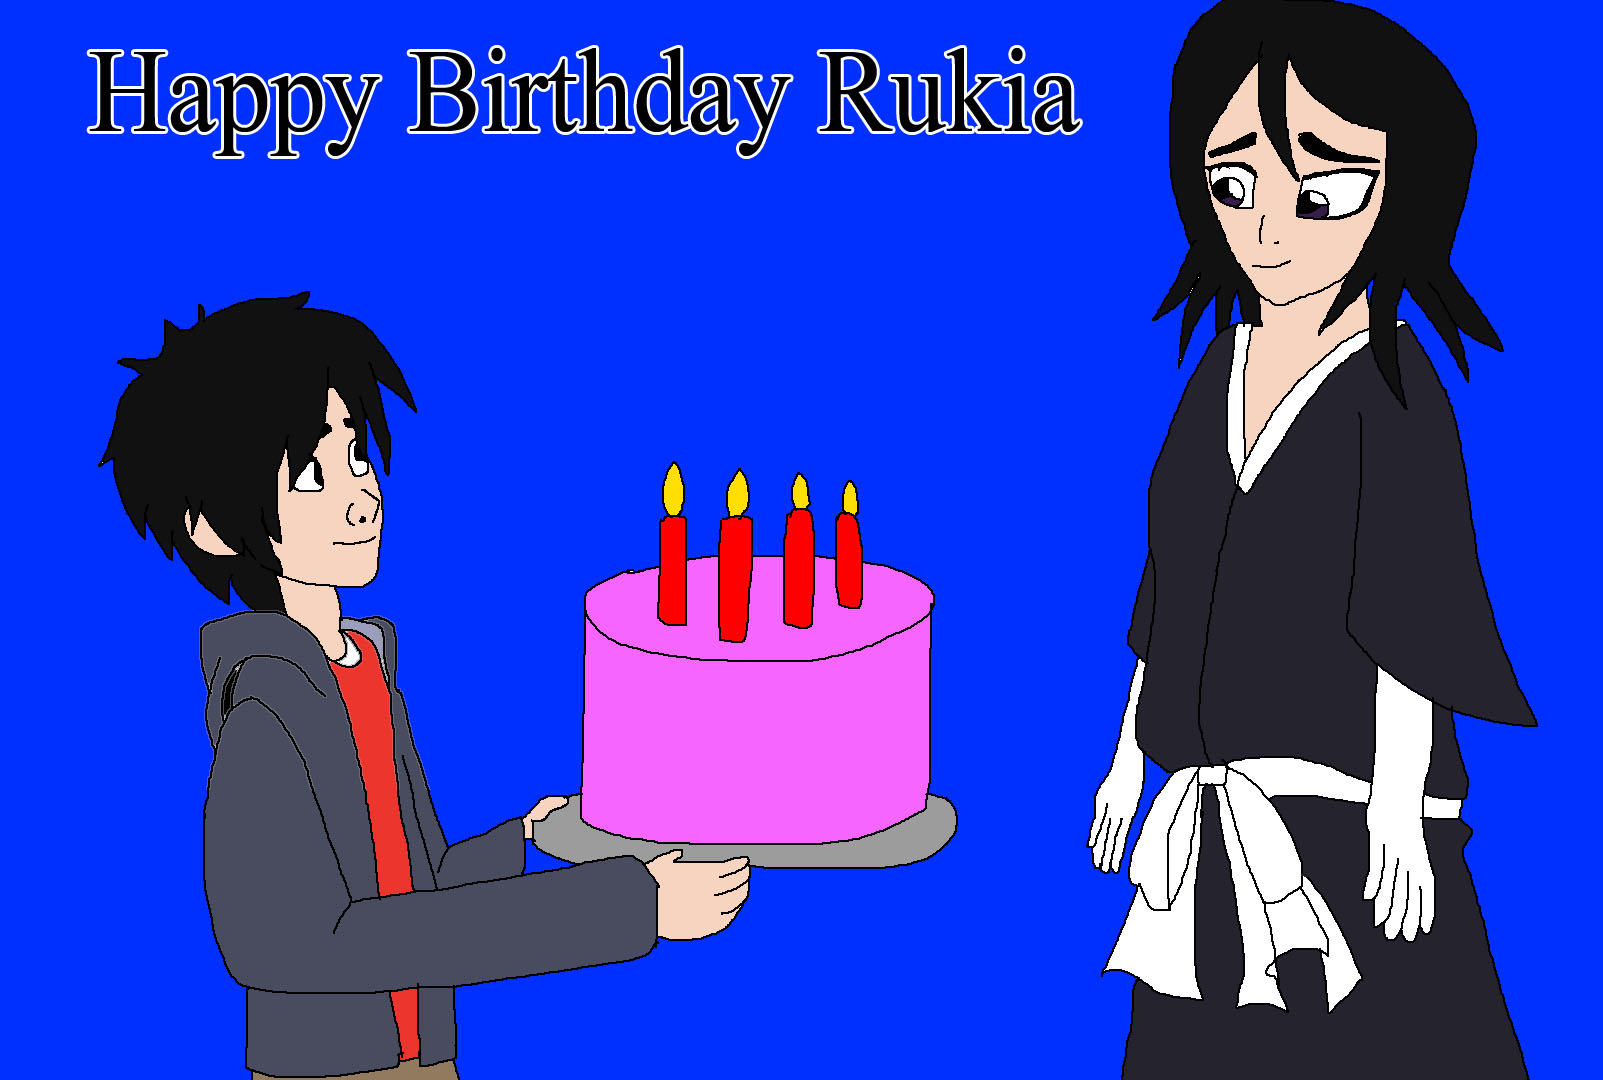 Happy Birthday Rukia by Rainbow-Dash-Rockz